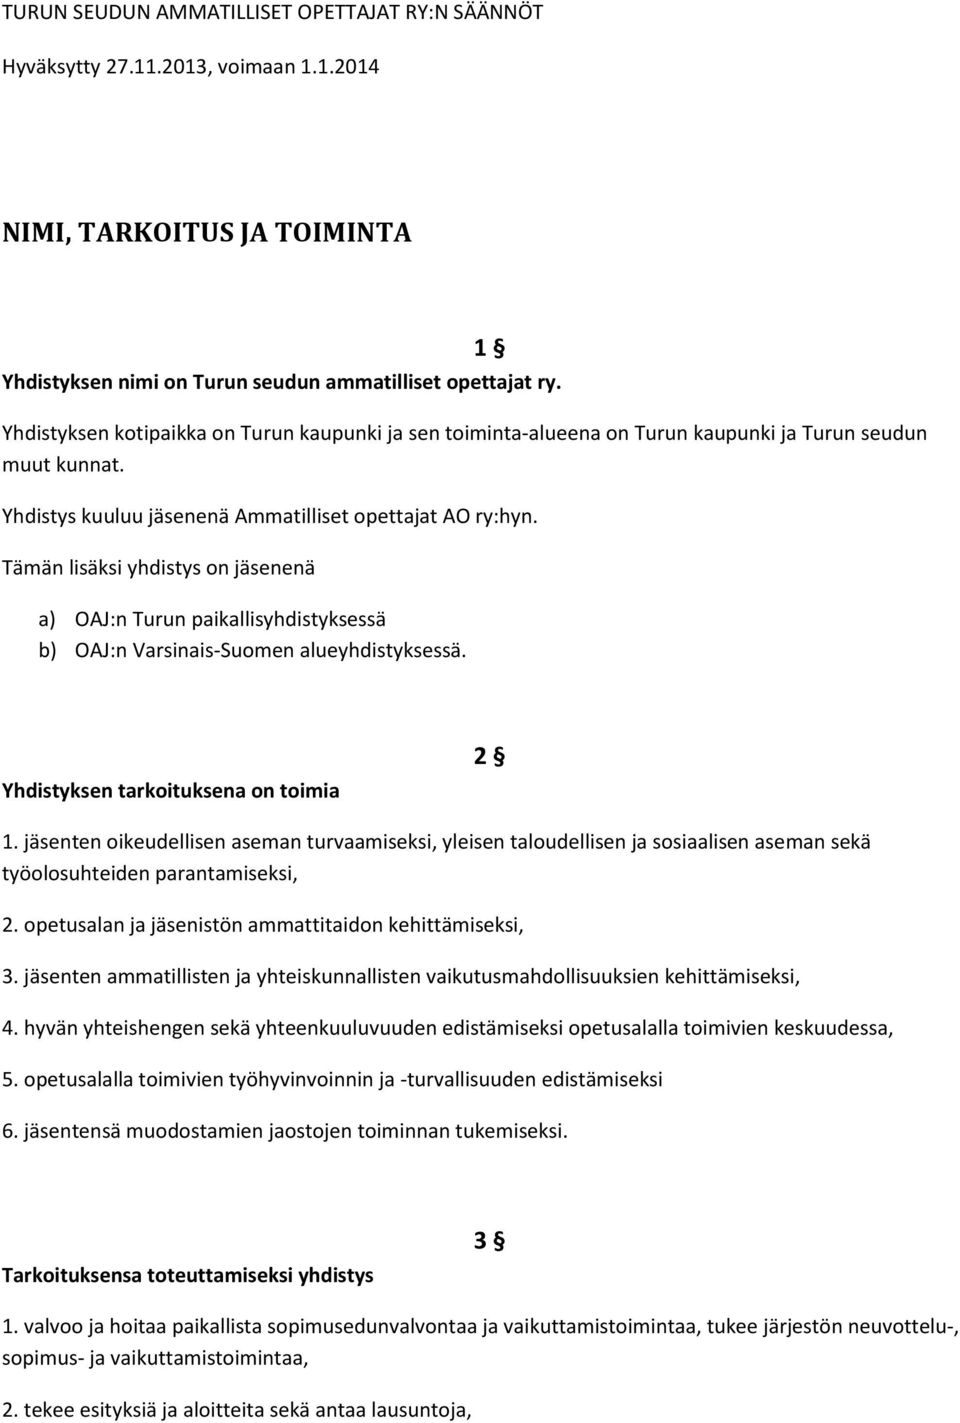 Tämän lisäksi yhdistys on jäsenenä a) OAJ:n Turun paikallisyhdistyksessä b) OAJ:n Varsinais-Suomen alueyhdistyksessä. Yhdistyksen tarkoituksena on toimia 2 1.